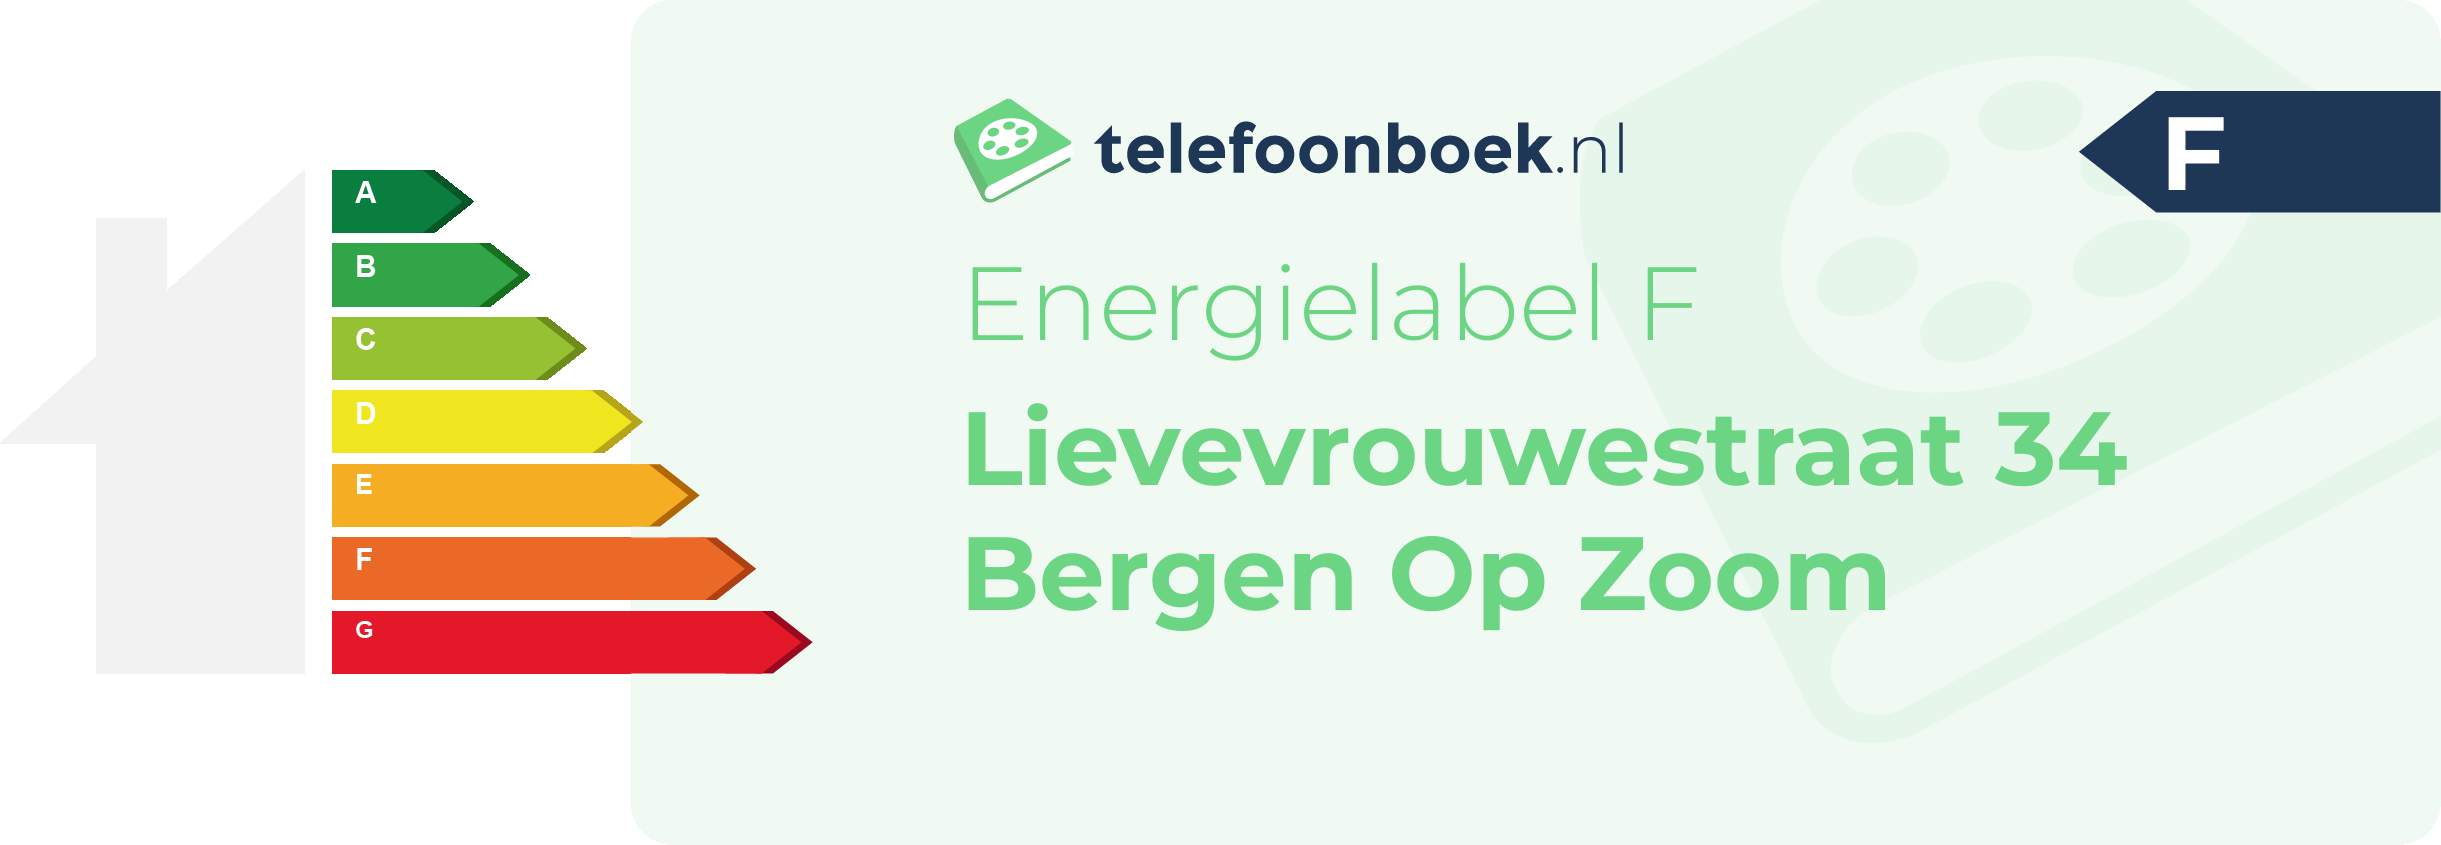 Energielabel Lievevrouwestraat 34 Bergen Op Zoom